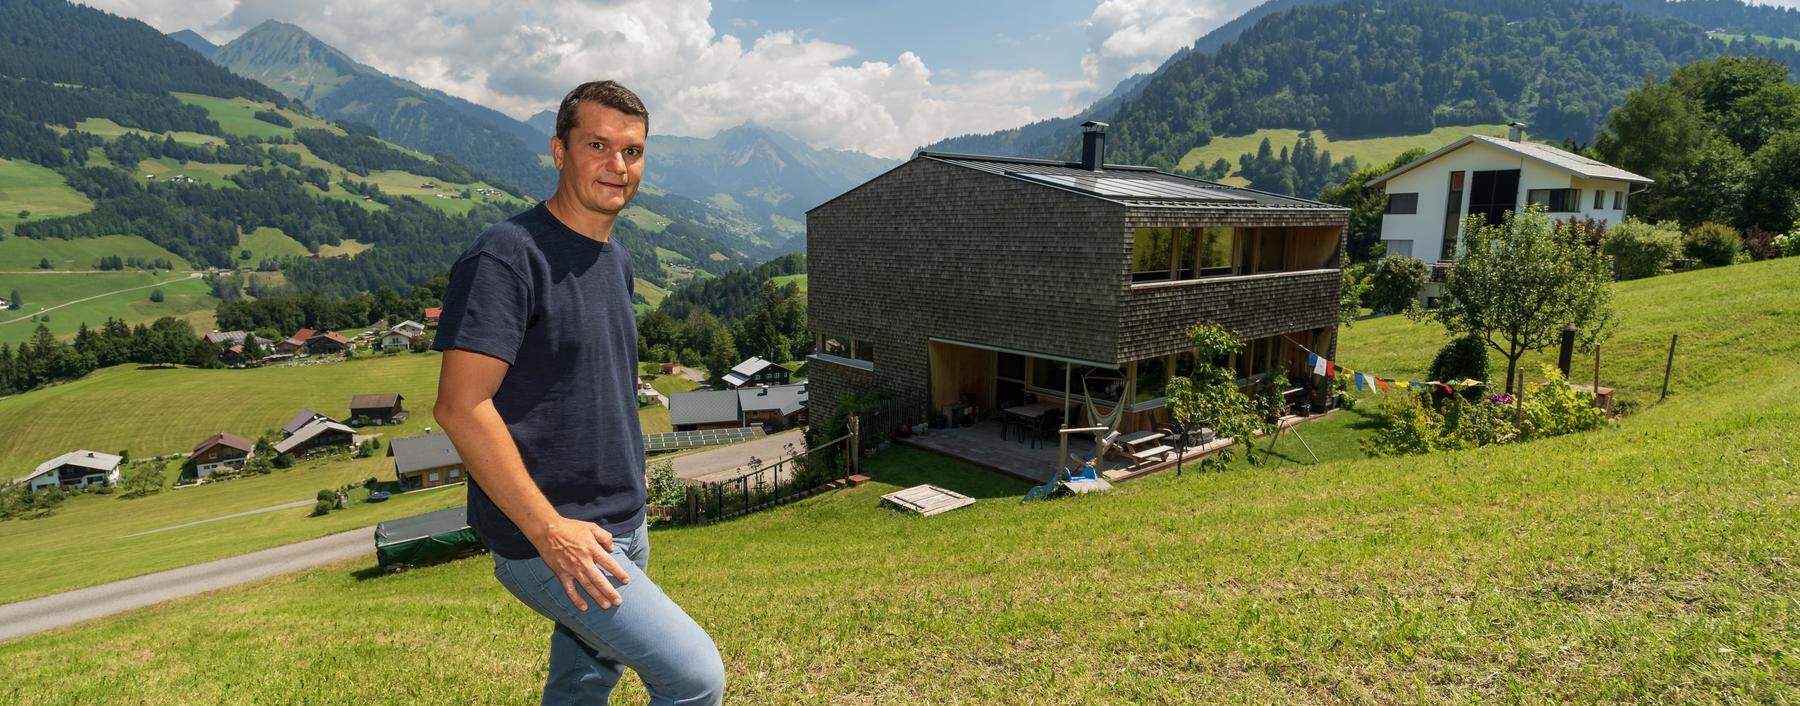 Andreas Bertel hat das erste Passivhaus in der Region gebaut und bezogen.